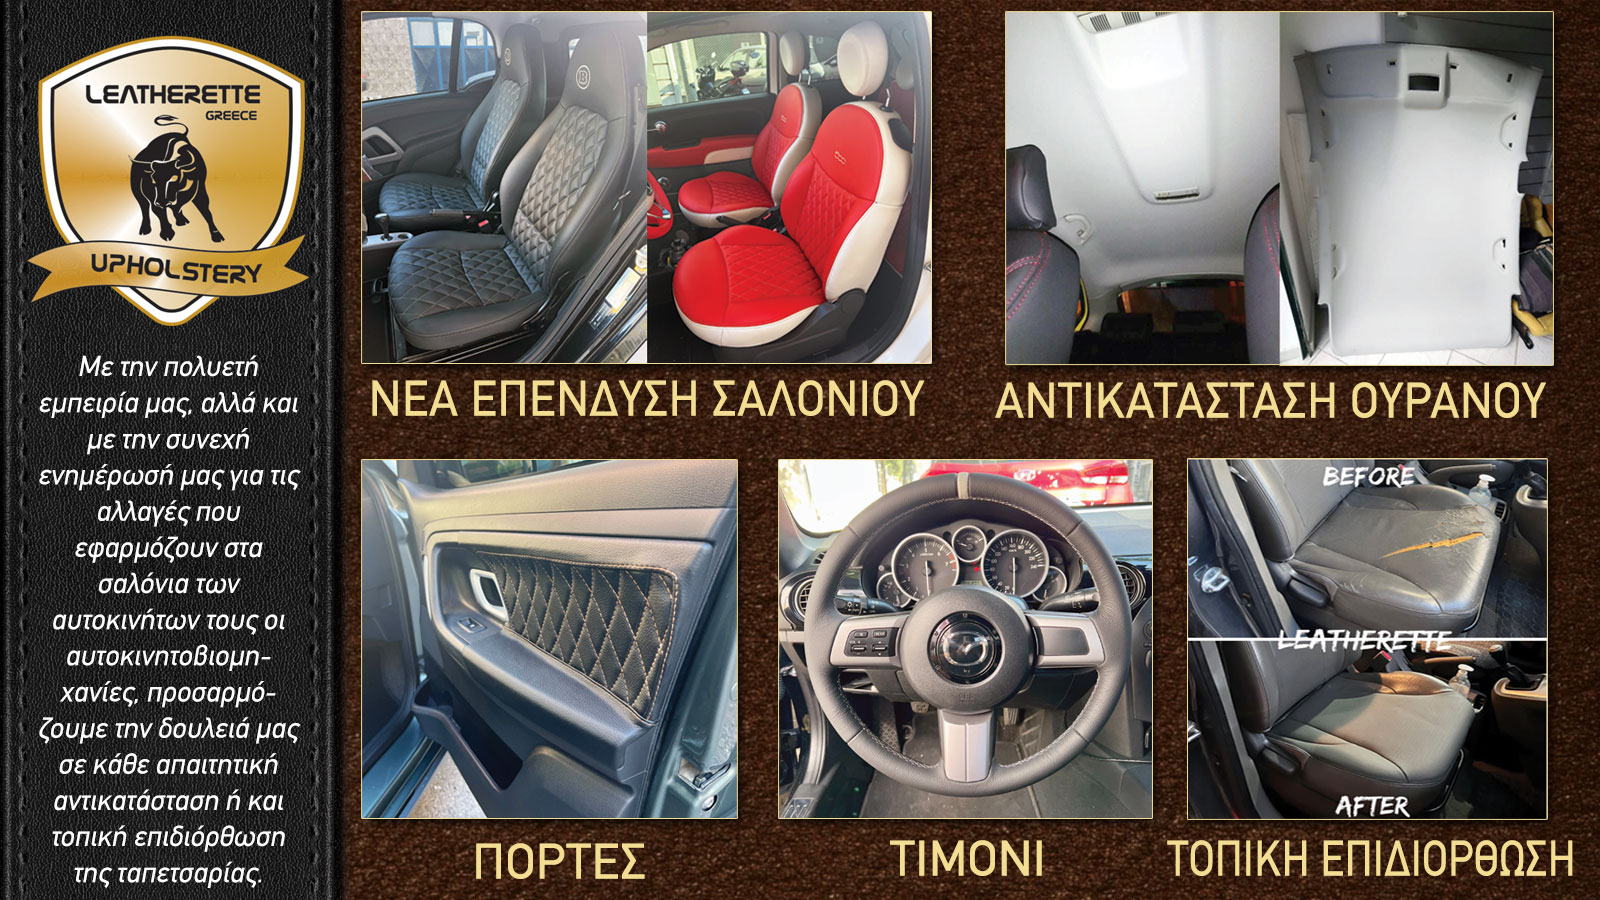 Ταπετσαρίες αυτοκινήτων στον Πειραιά – Leatherette